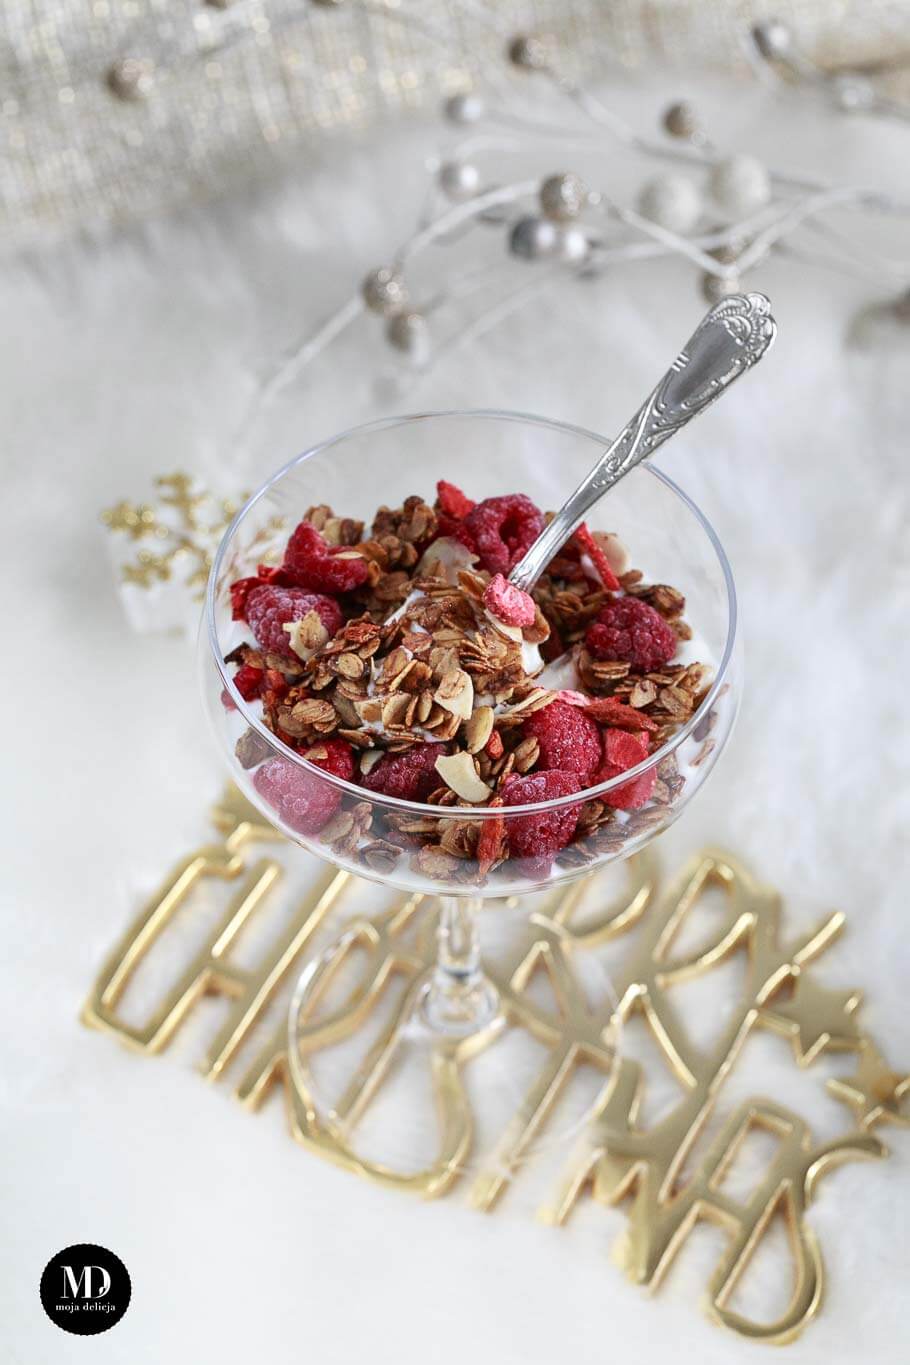 Szybka granola z cynamonem i jogurtem, czyli szybki i zdrowy deser na śniadanie